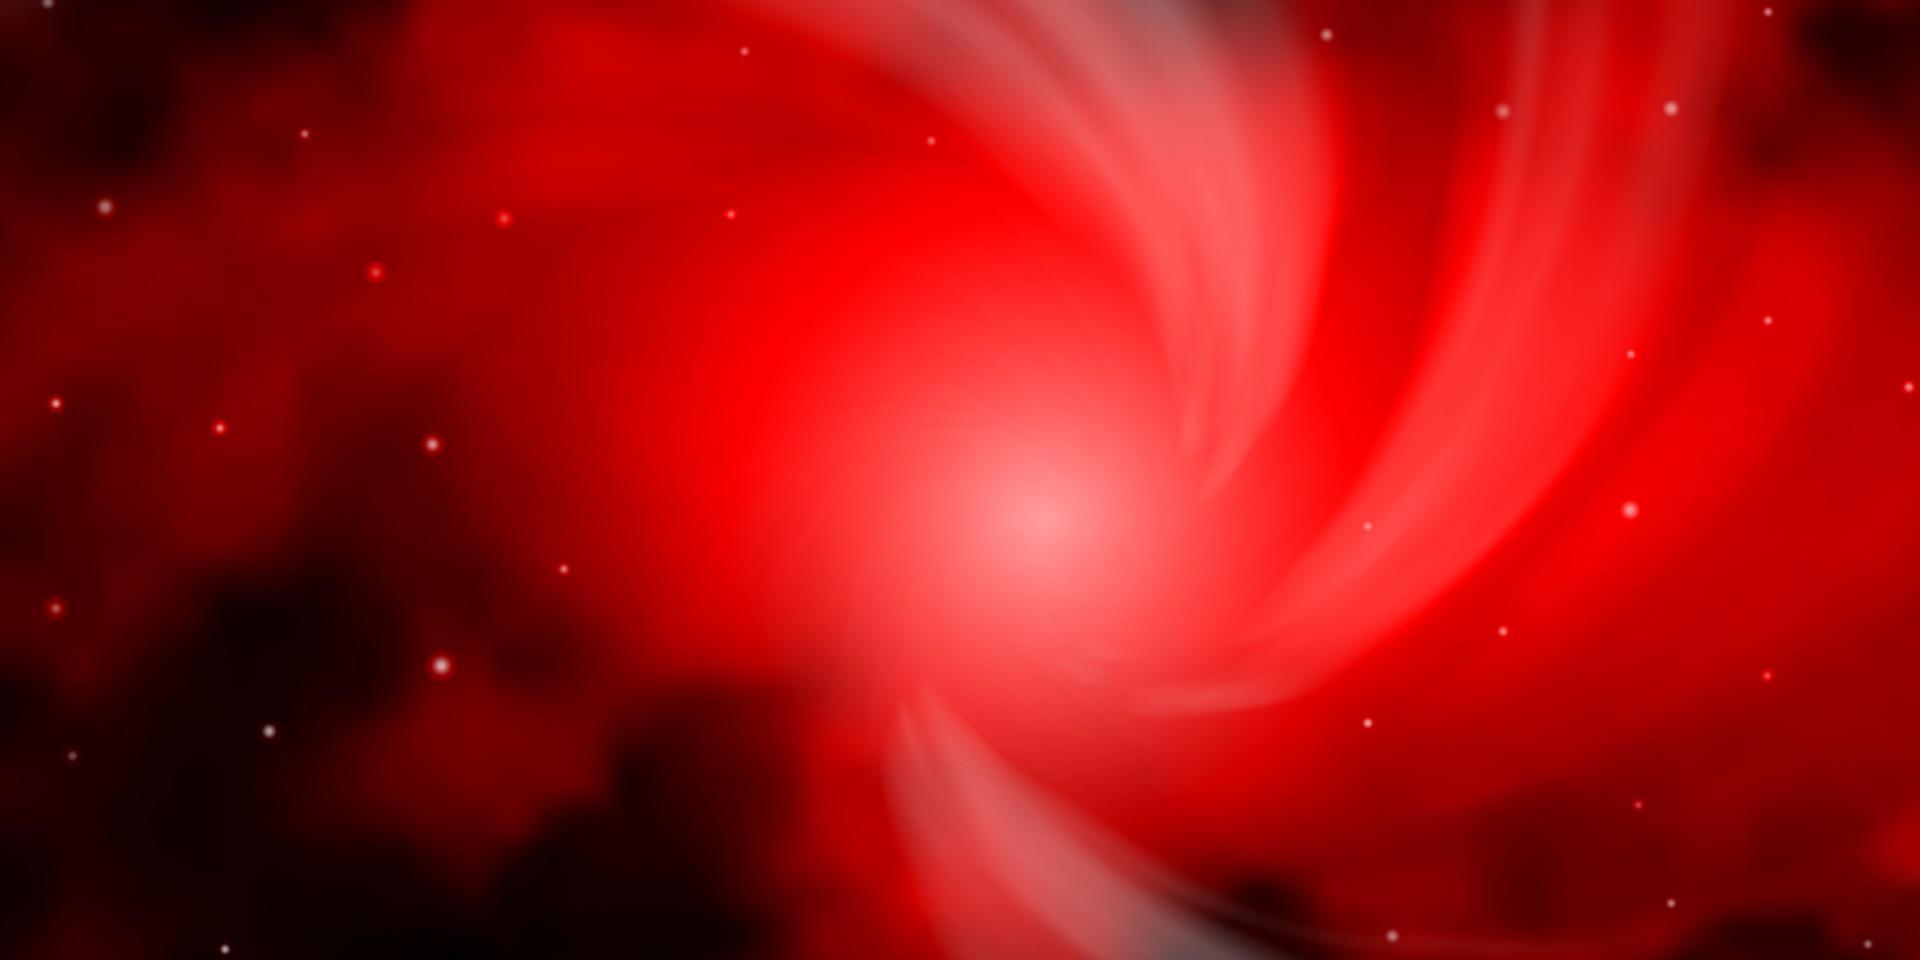 plantilla de vector rojo oscuro con estrellas de neón.